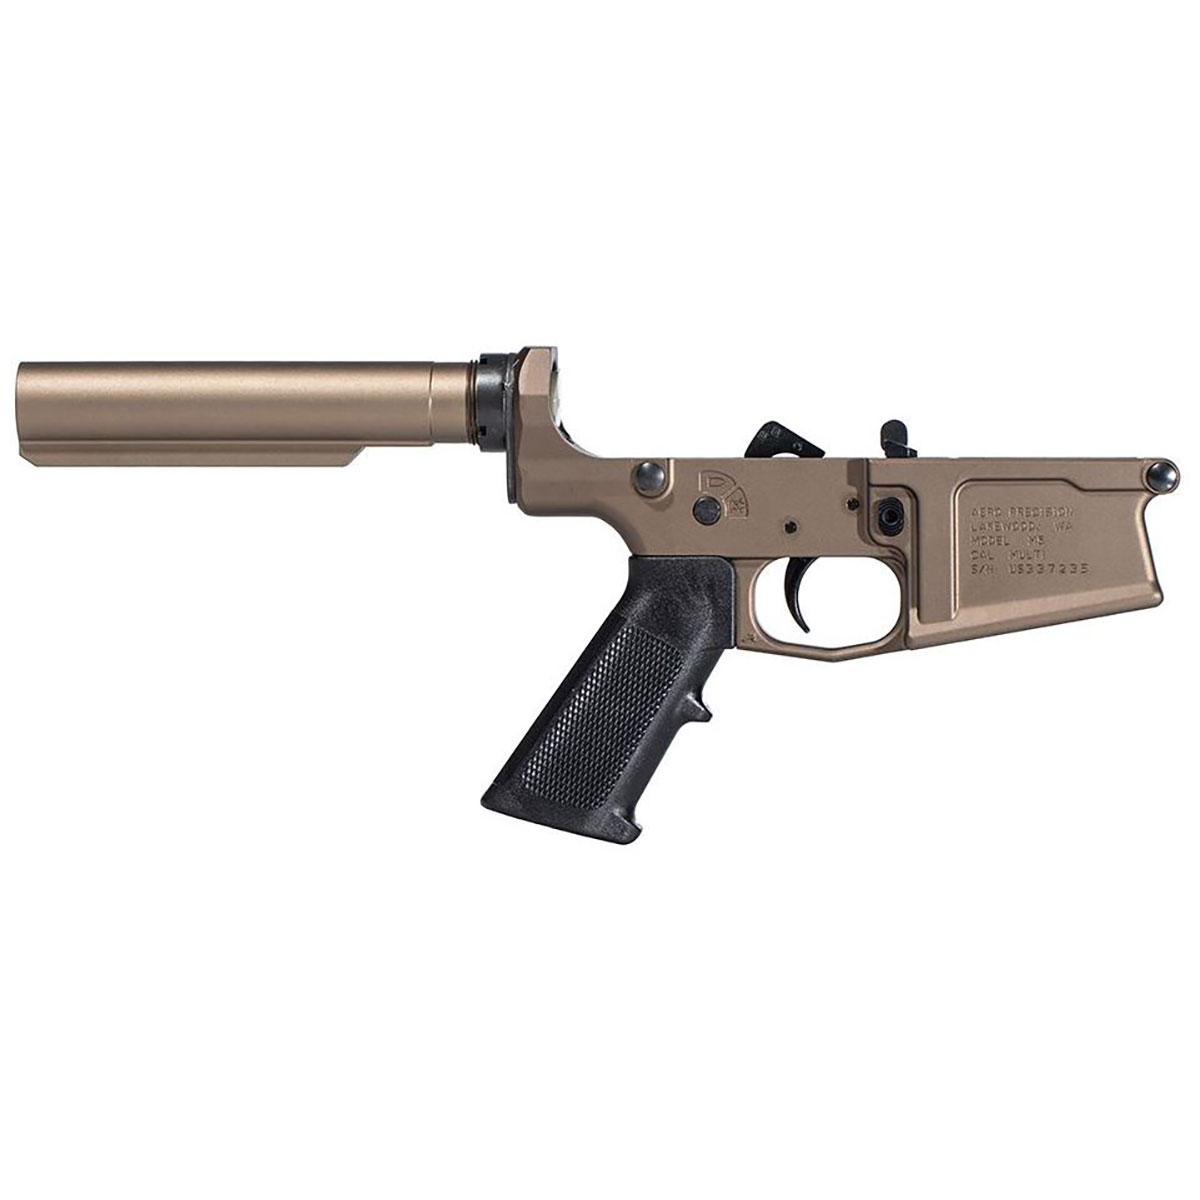 AERO PRECISION M5 Carbine Complete Lower W/A2 Grip No Stock for AR 